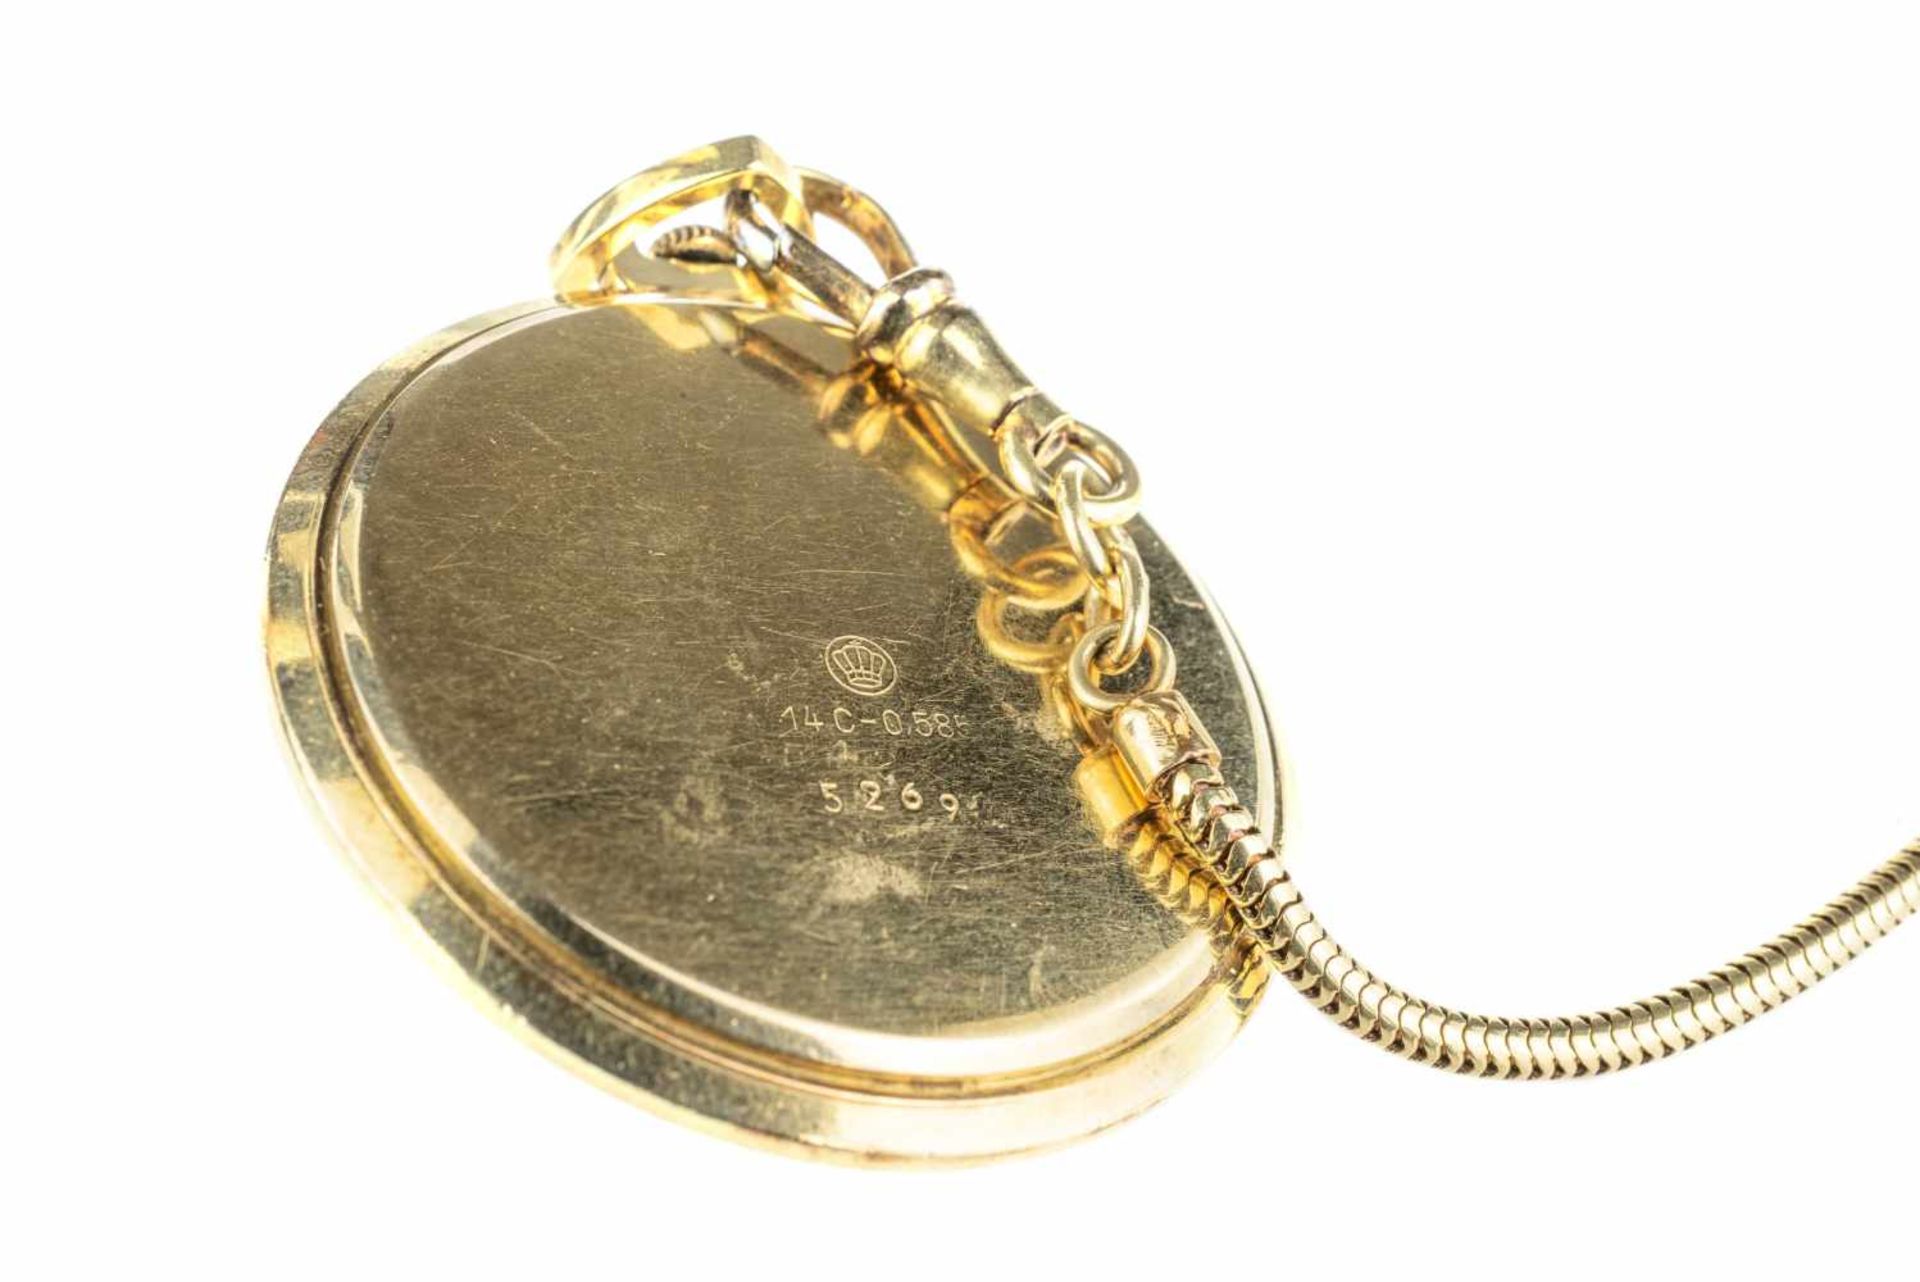 Akros Taschenuhr, Handaufzug, Gehäuse 585 Gelbgold, punziert, Durchmesser 41 mm, Uhrenkette, 585 - Image 3 of 3